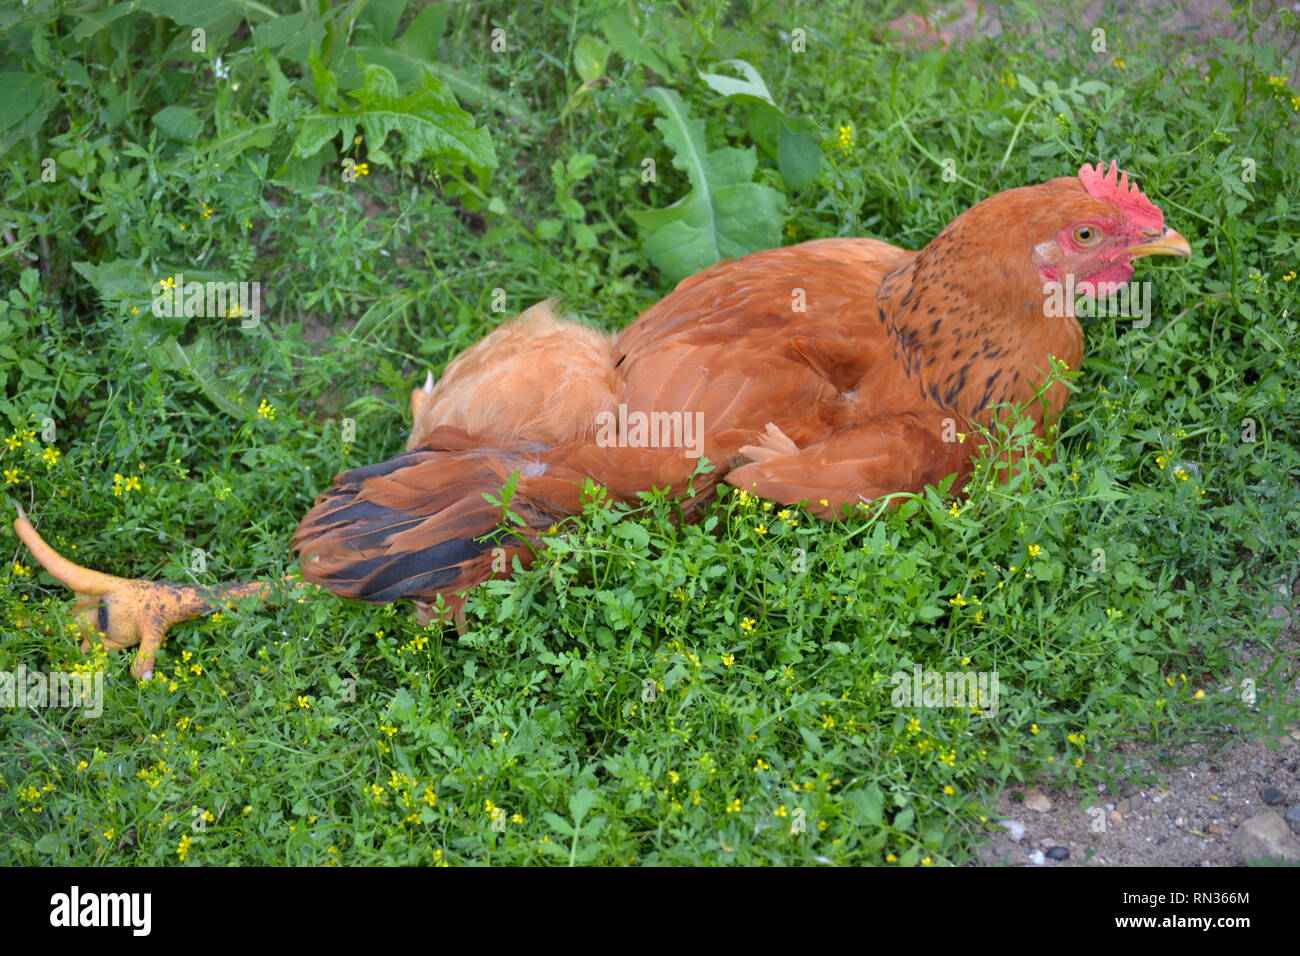 Pollo pardo tumbado en la hierba en el día de verano caliente, lechuza doméstica, gallus gallus domesticus Foto de stock